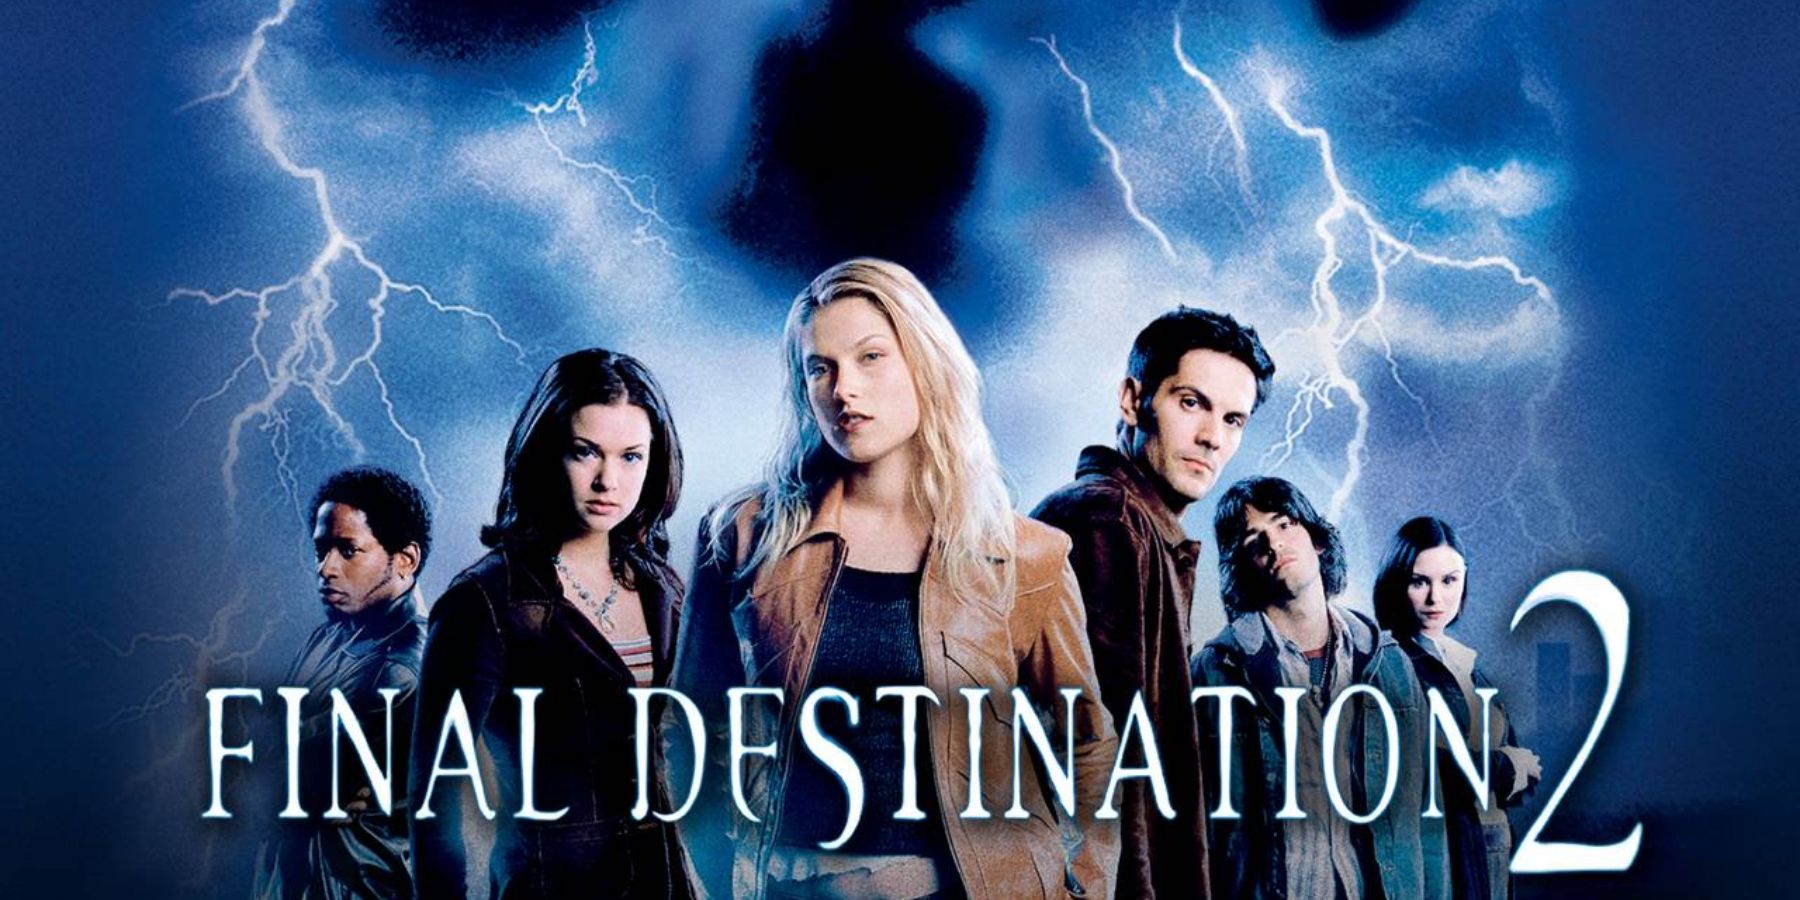 final destination 5 full movie watch online